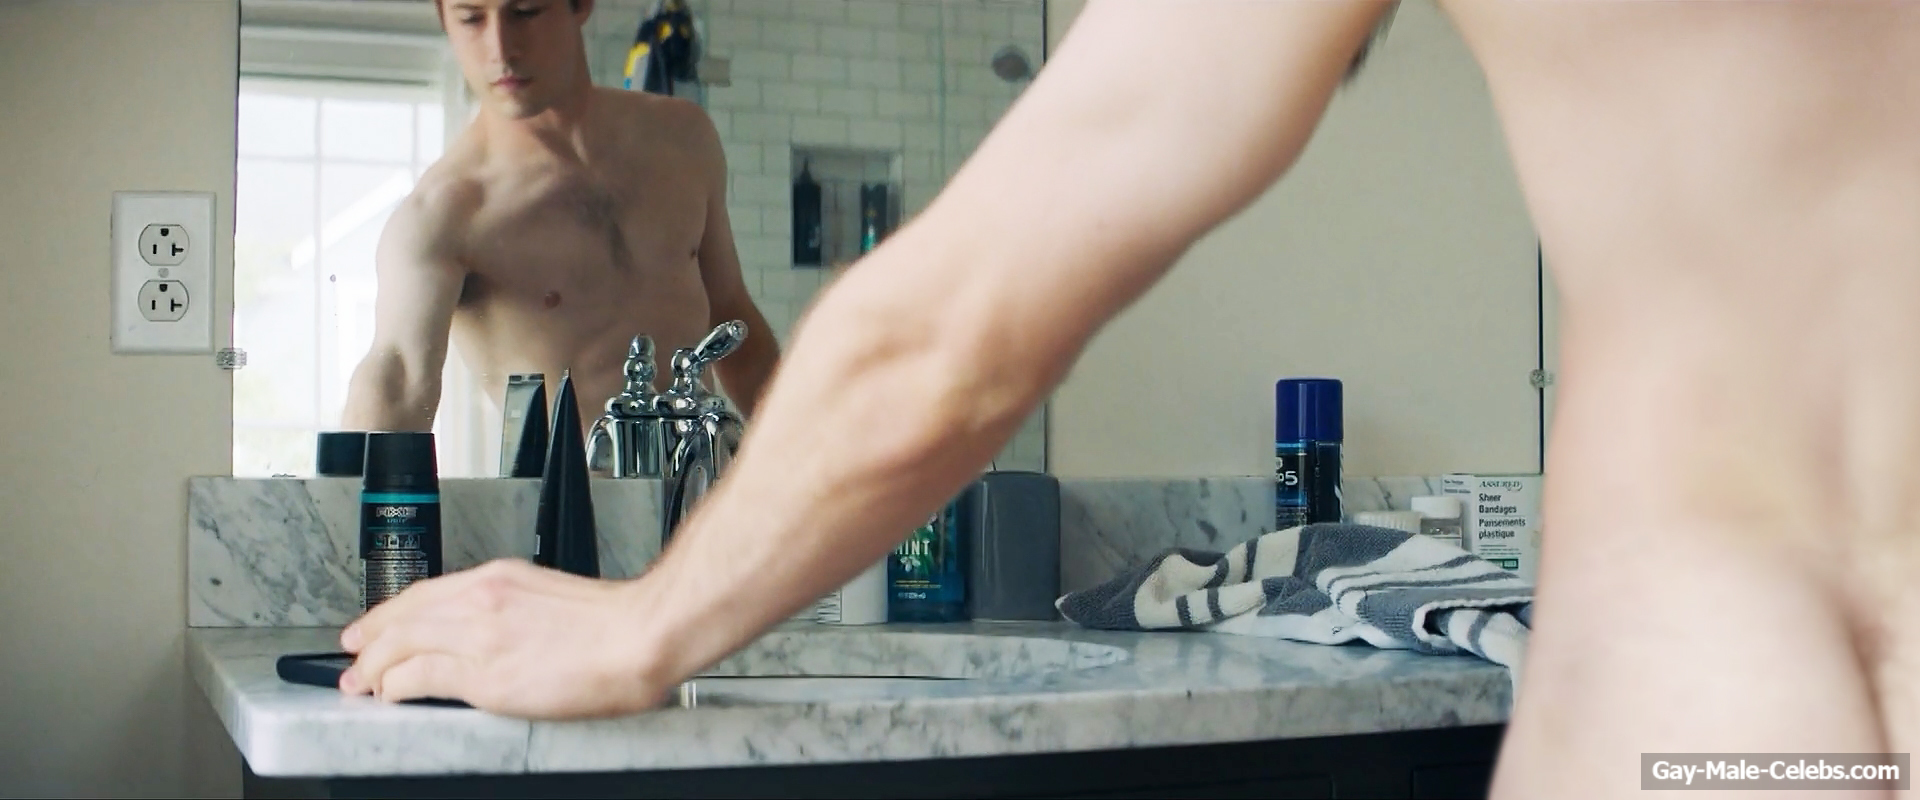 Dylan Minnette Nude Shower Scenes from Scream